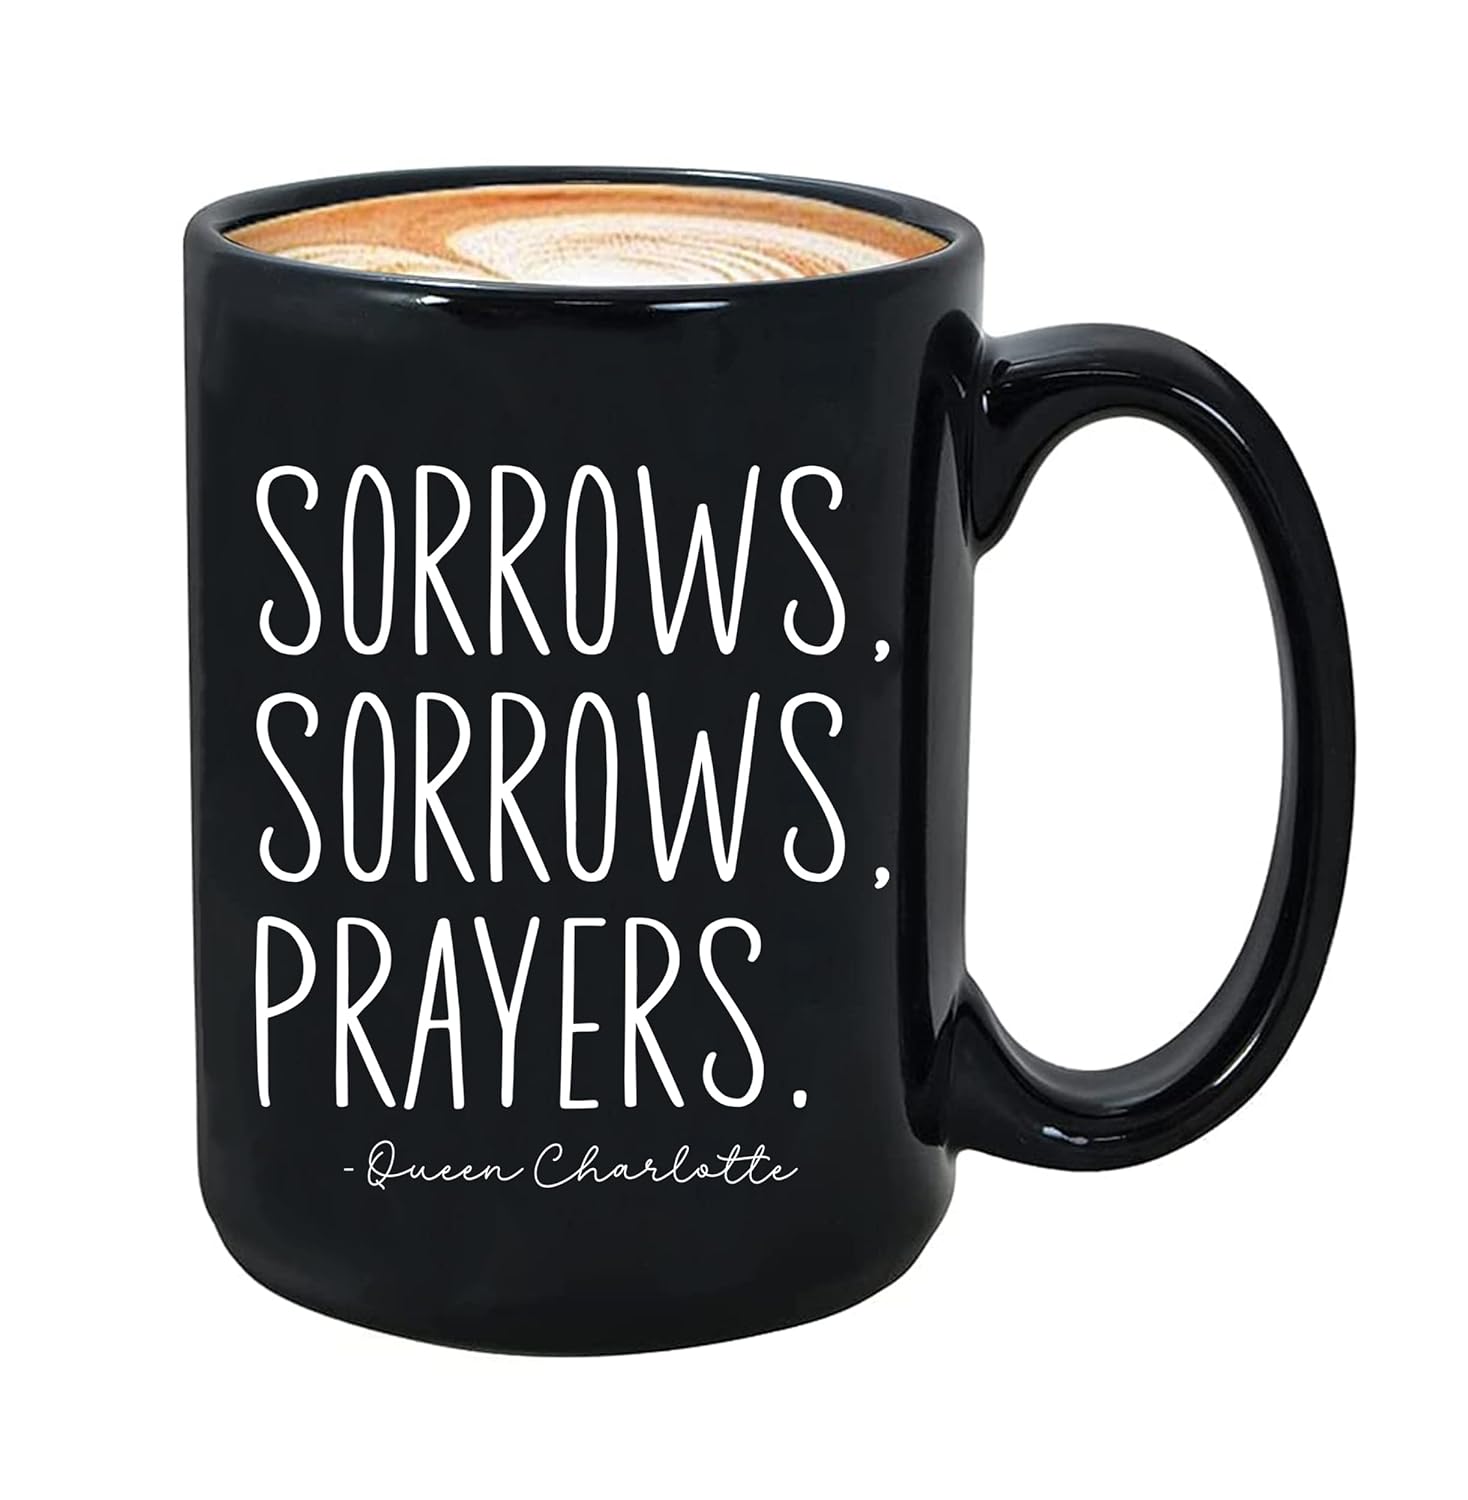 Sorrows, Sorrows, Prayers Mug, Sorrows and Prayers Mug, Quote Mug, Sorrows Sorrows Prayers Mug 11oz, Mug 15oz, Mug Coffee